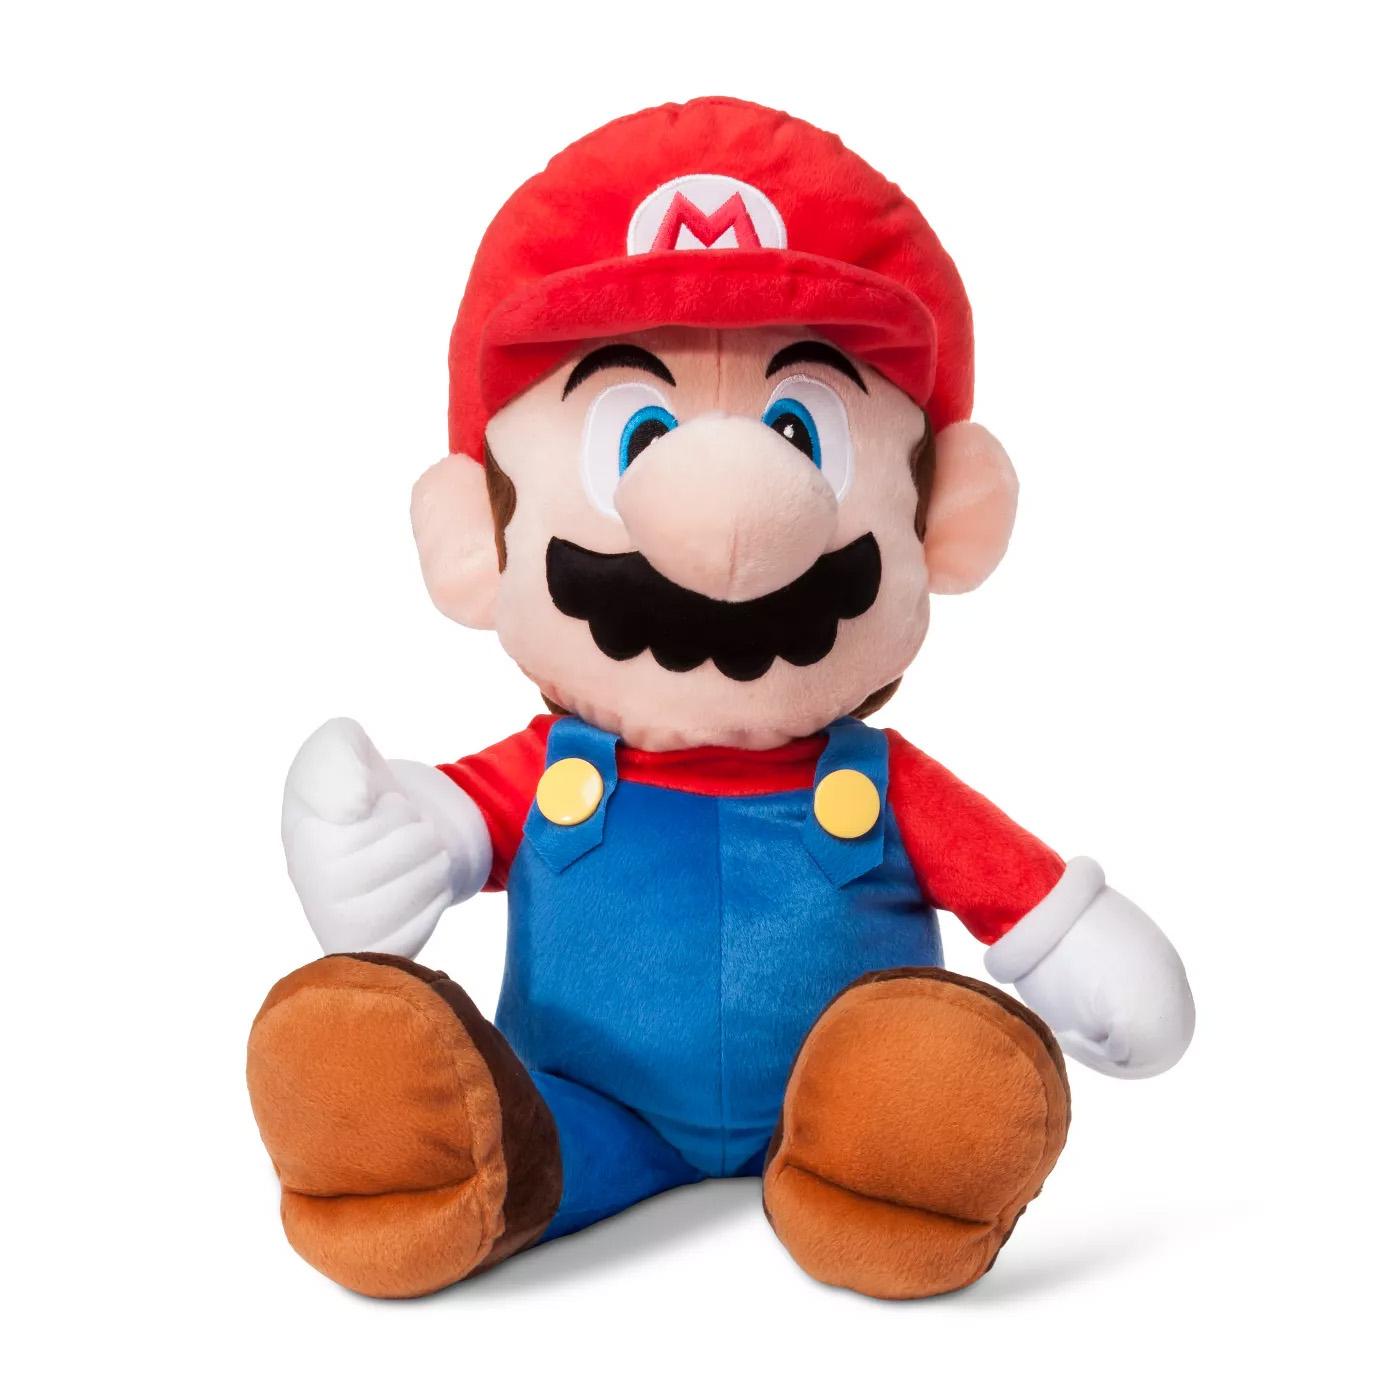 22in Nintendo Super Mario Throw Pillow for $12.89